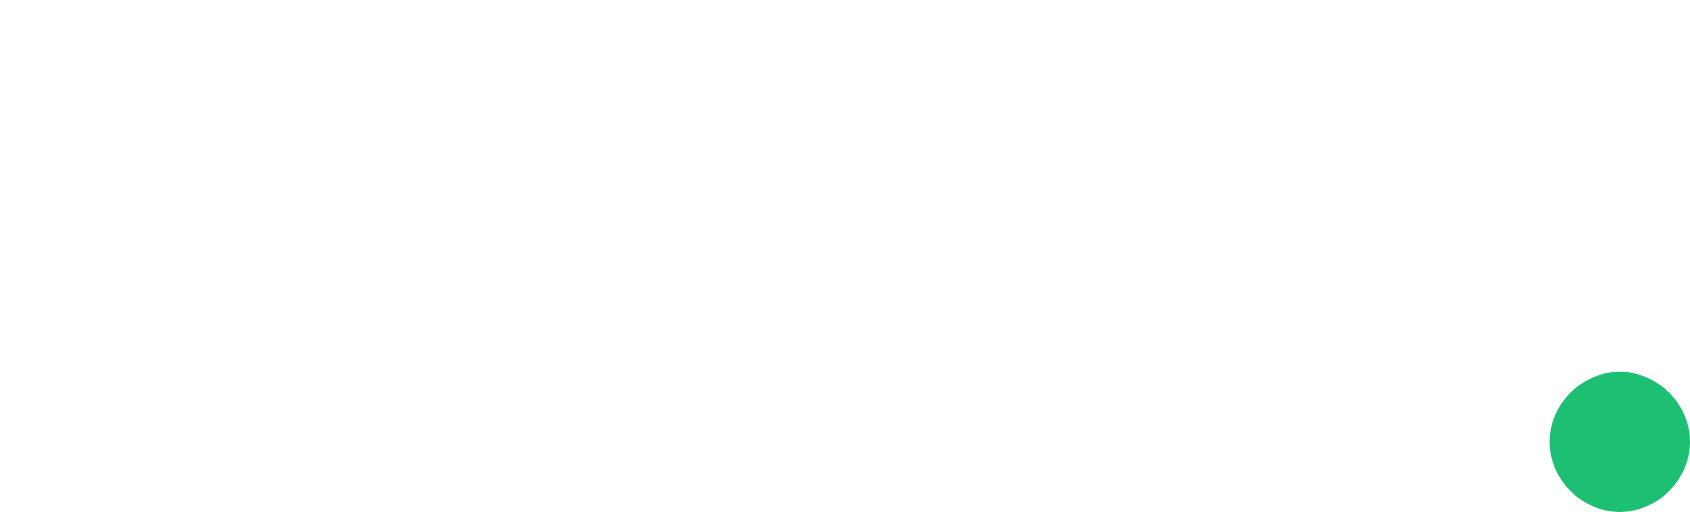 Fiverr logo large for dark backgrounds (transparent PNG)